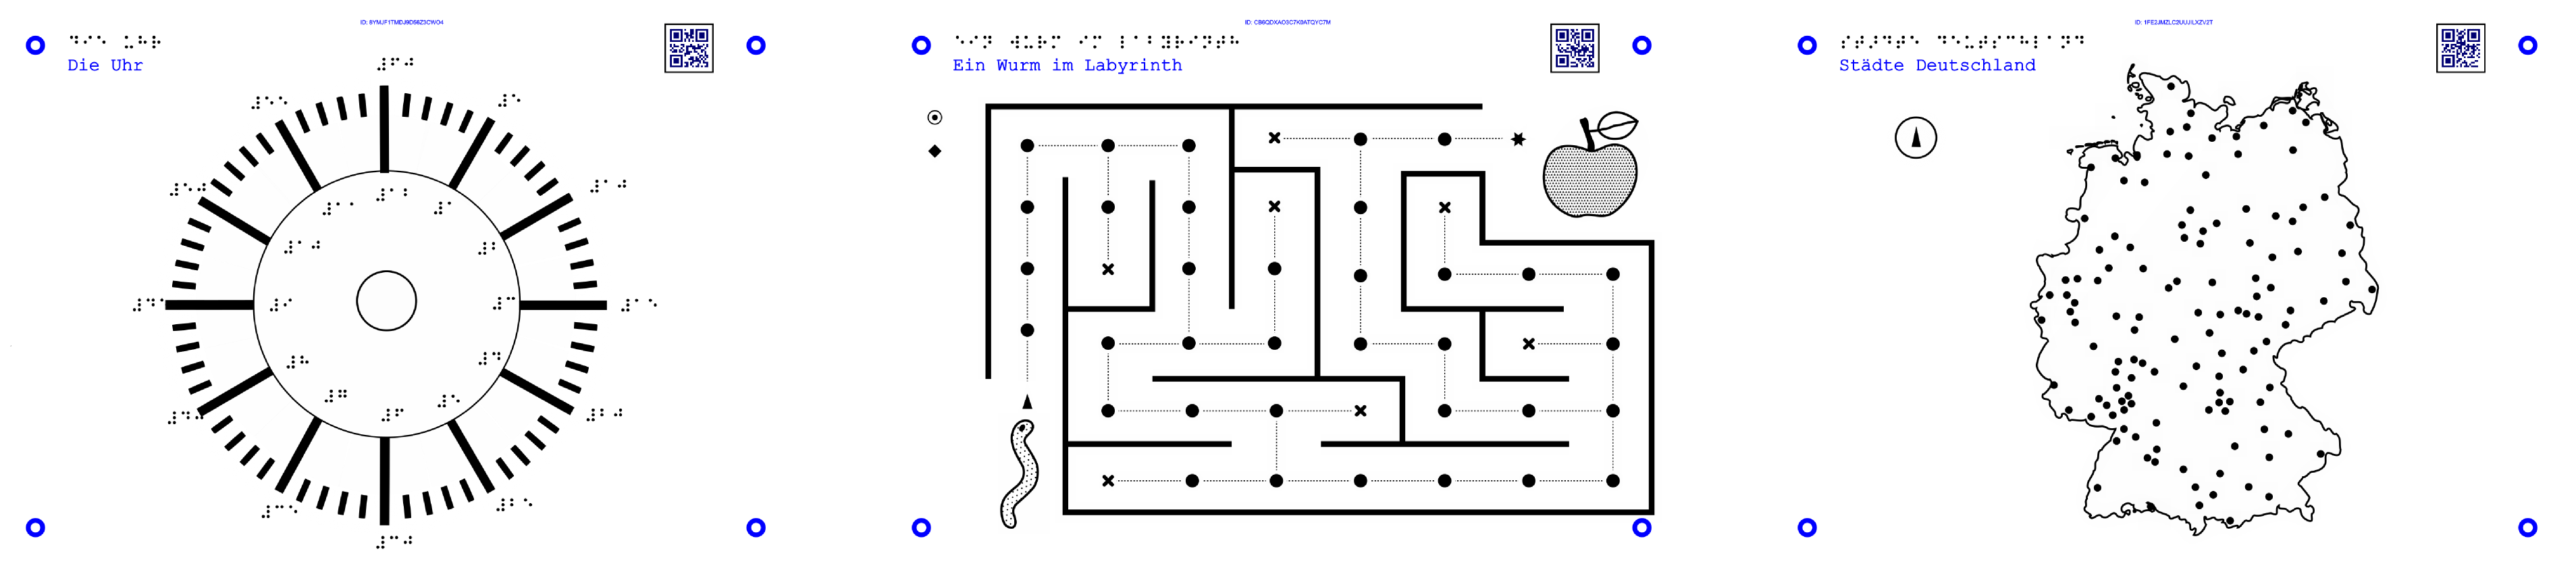 11Es werden 3 Grafiken gezeigt: Uhr, Labyrinth-Spiel Deutschland-Städte-Karte